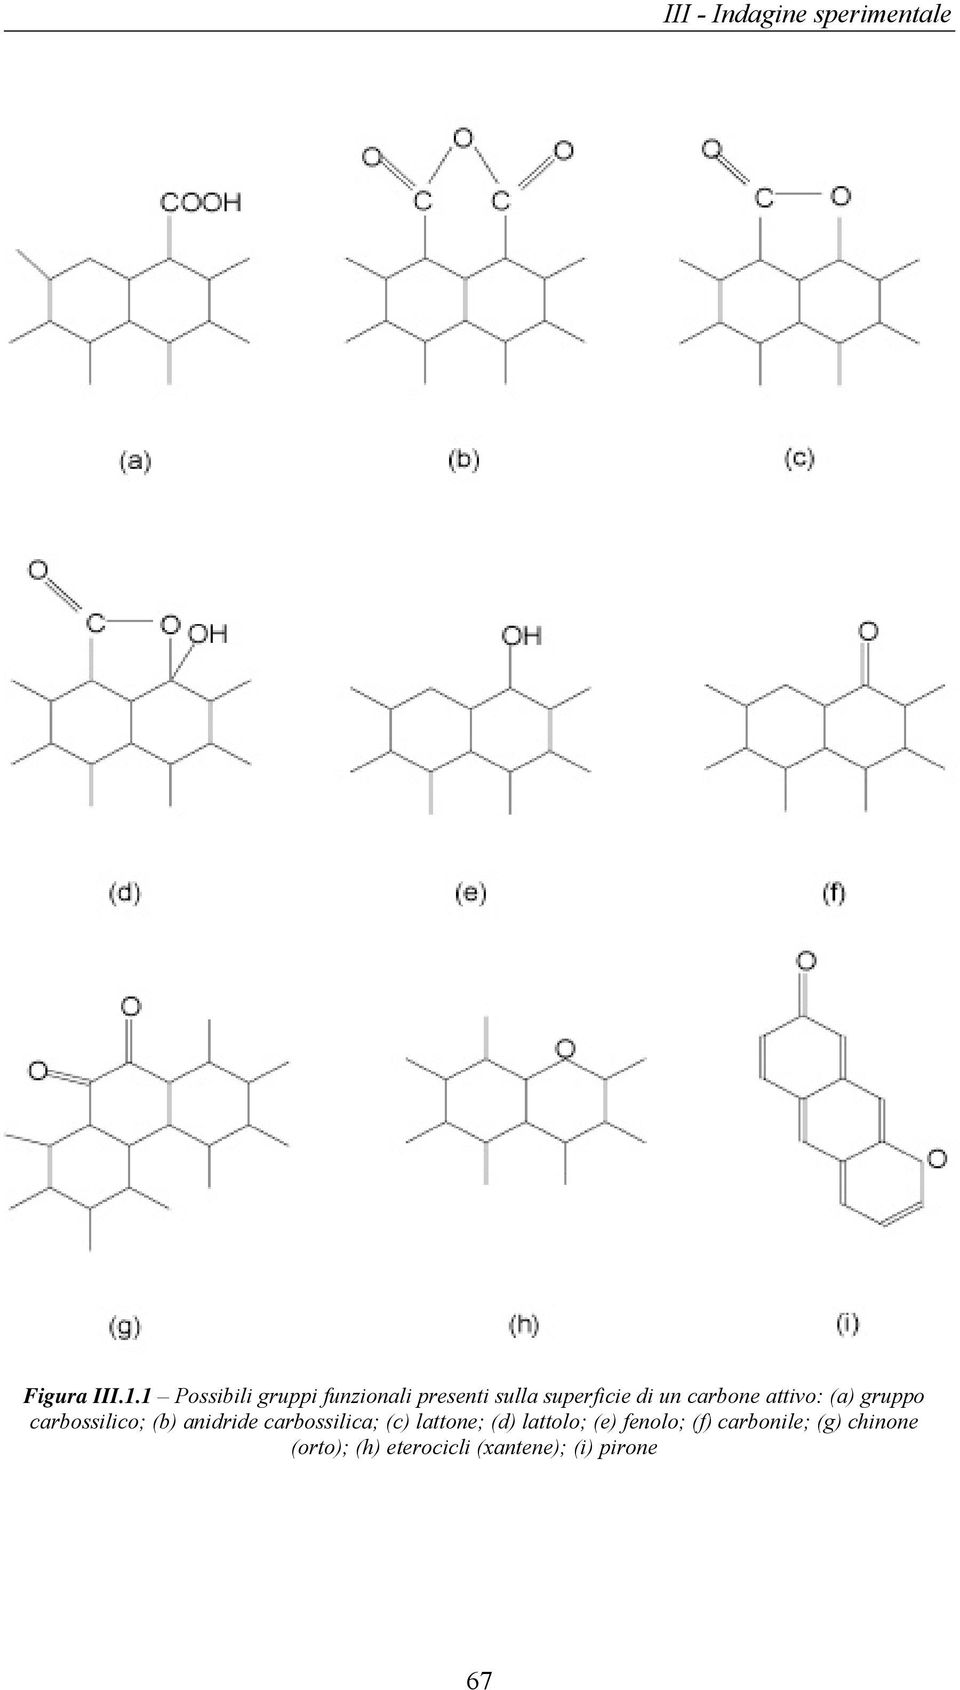 carbone attivo: (a) gruppo carbossilico; (b) anidride